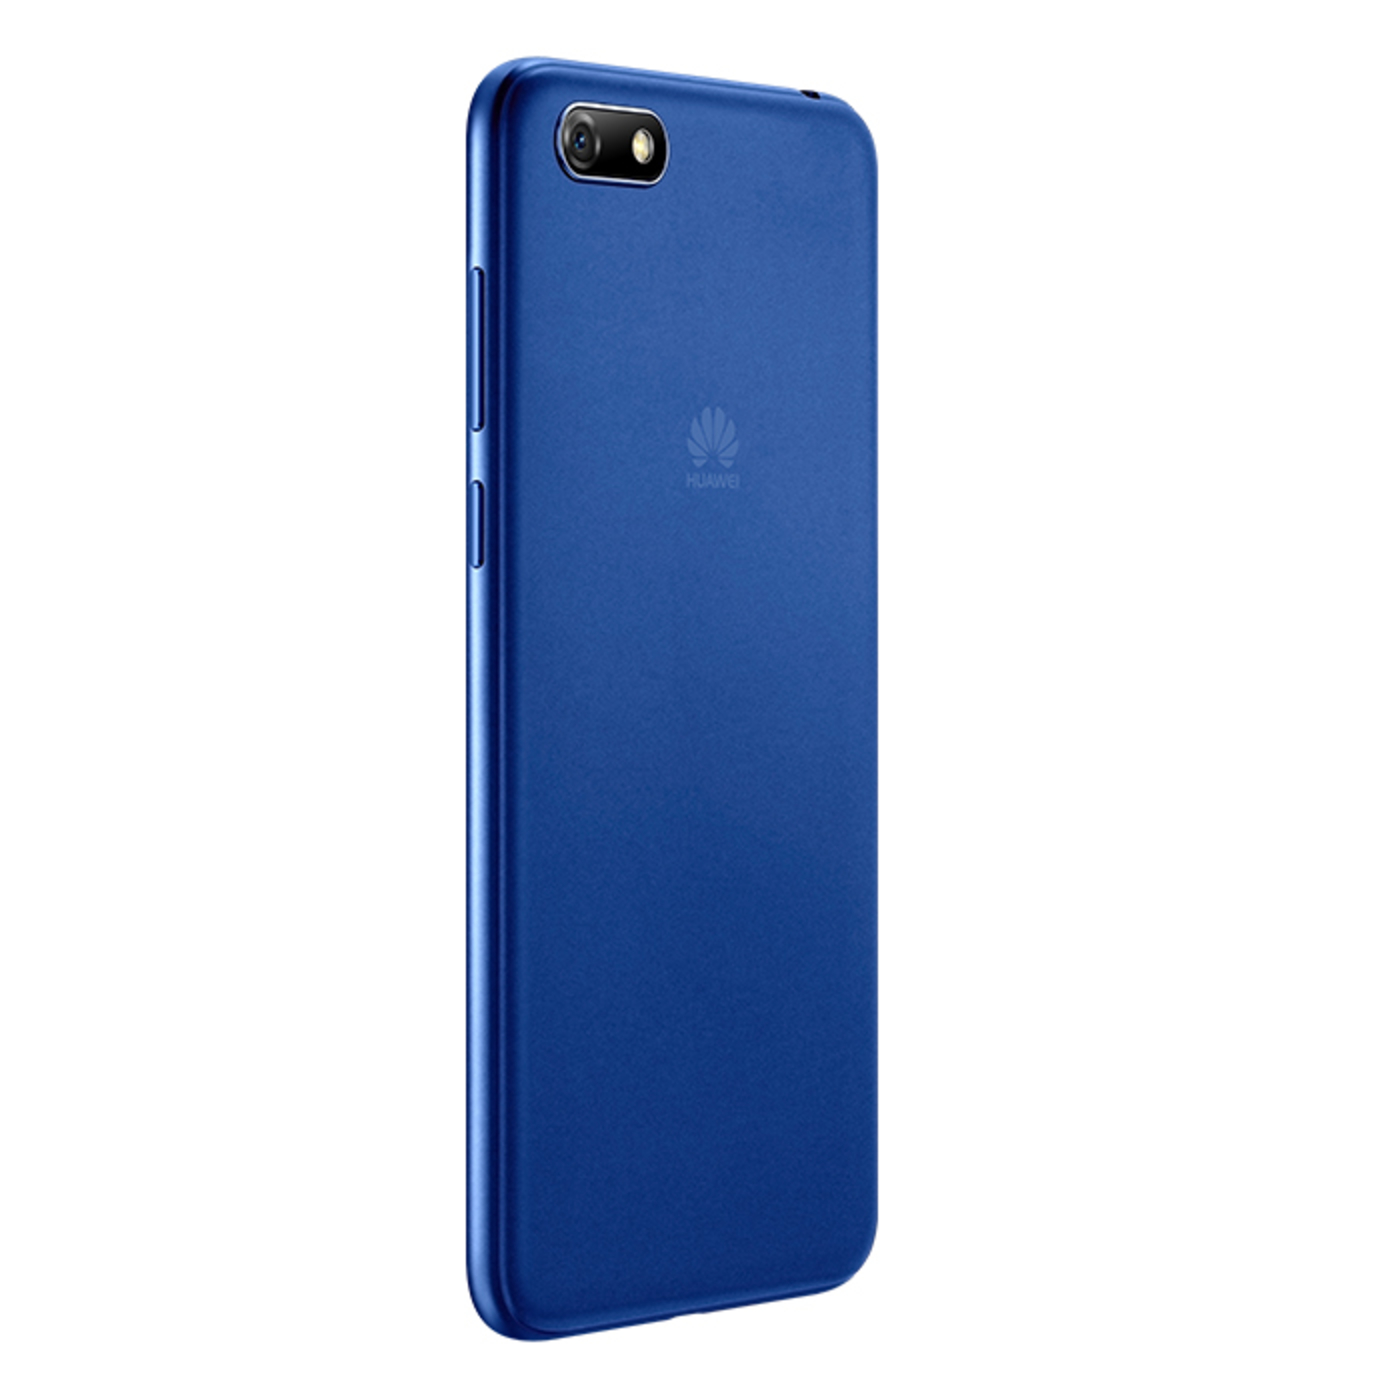 Celular HUAWEI Y5 Neo 16GB DS Azul